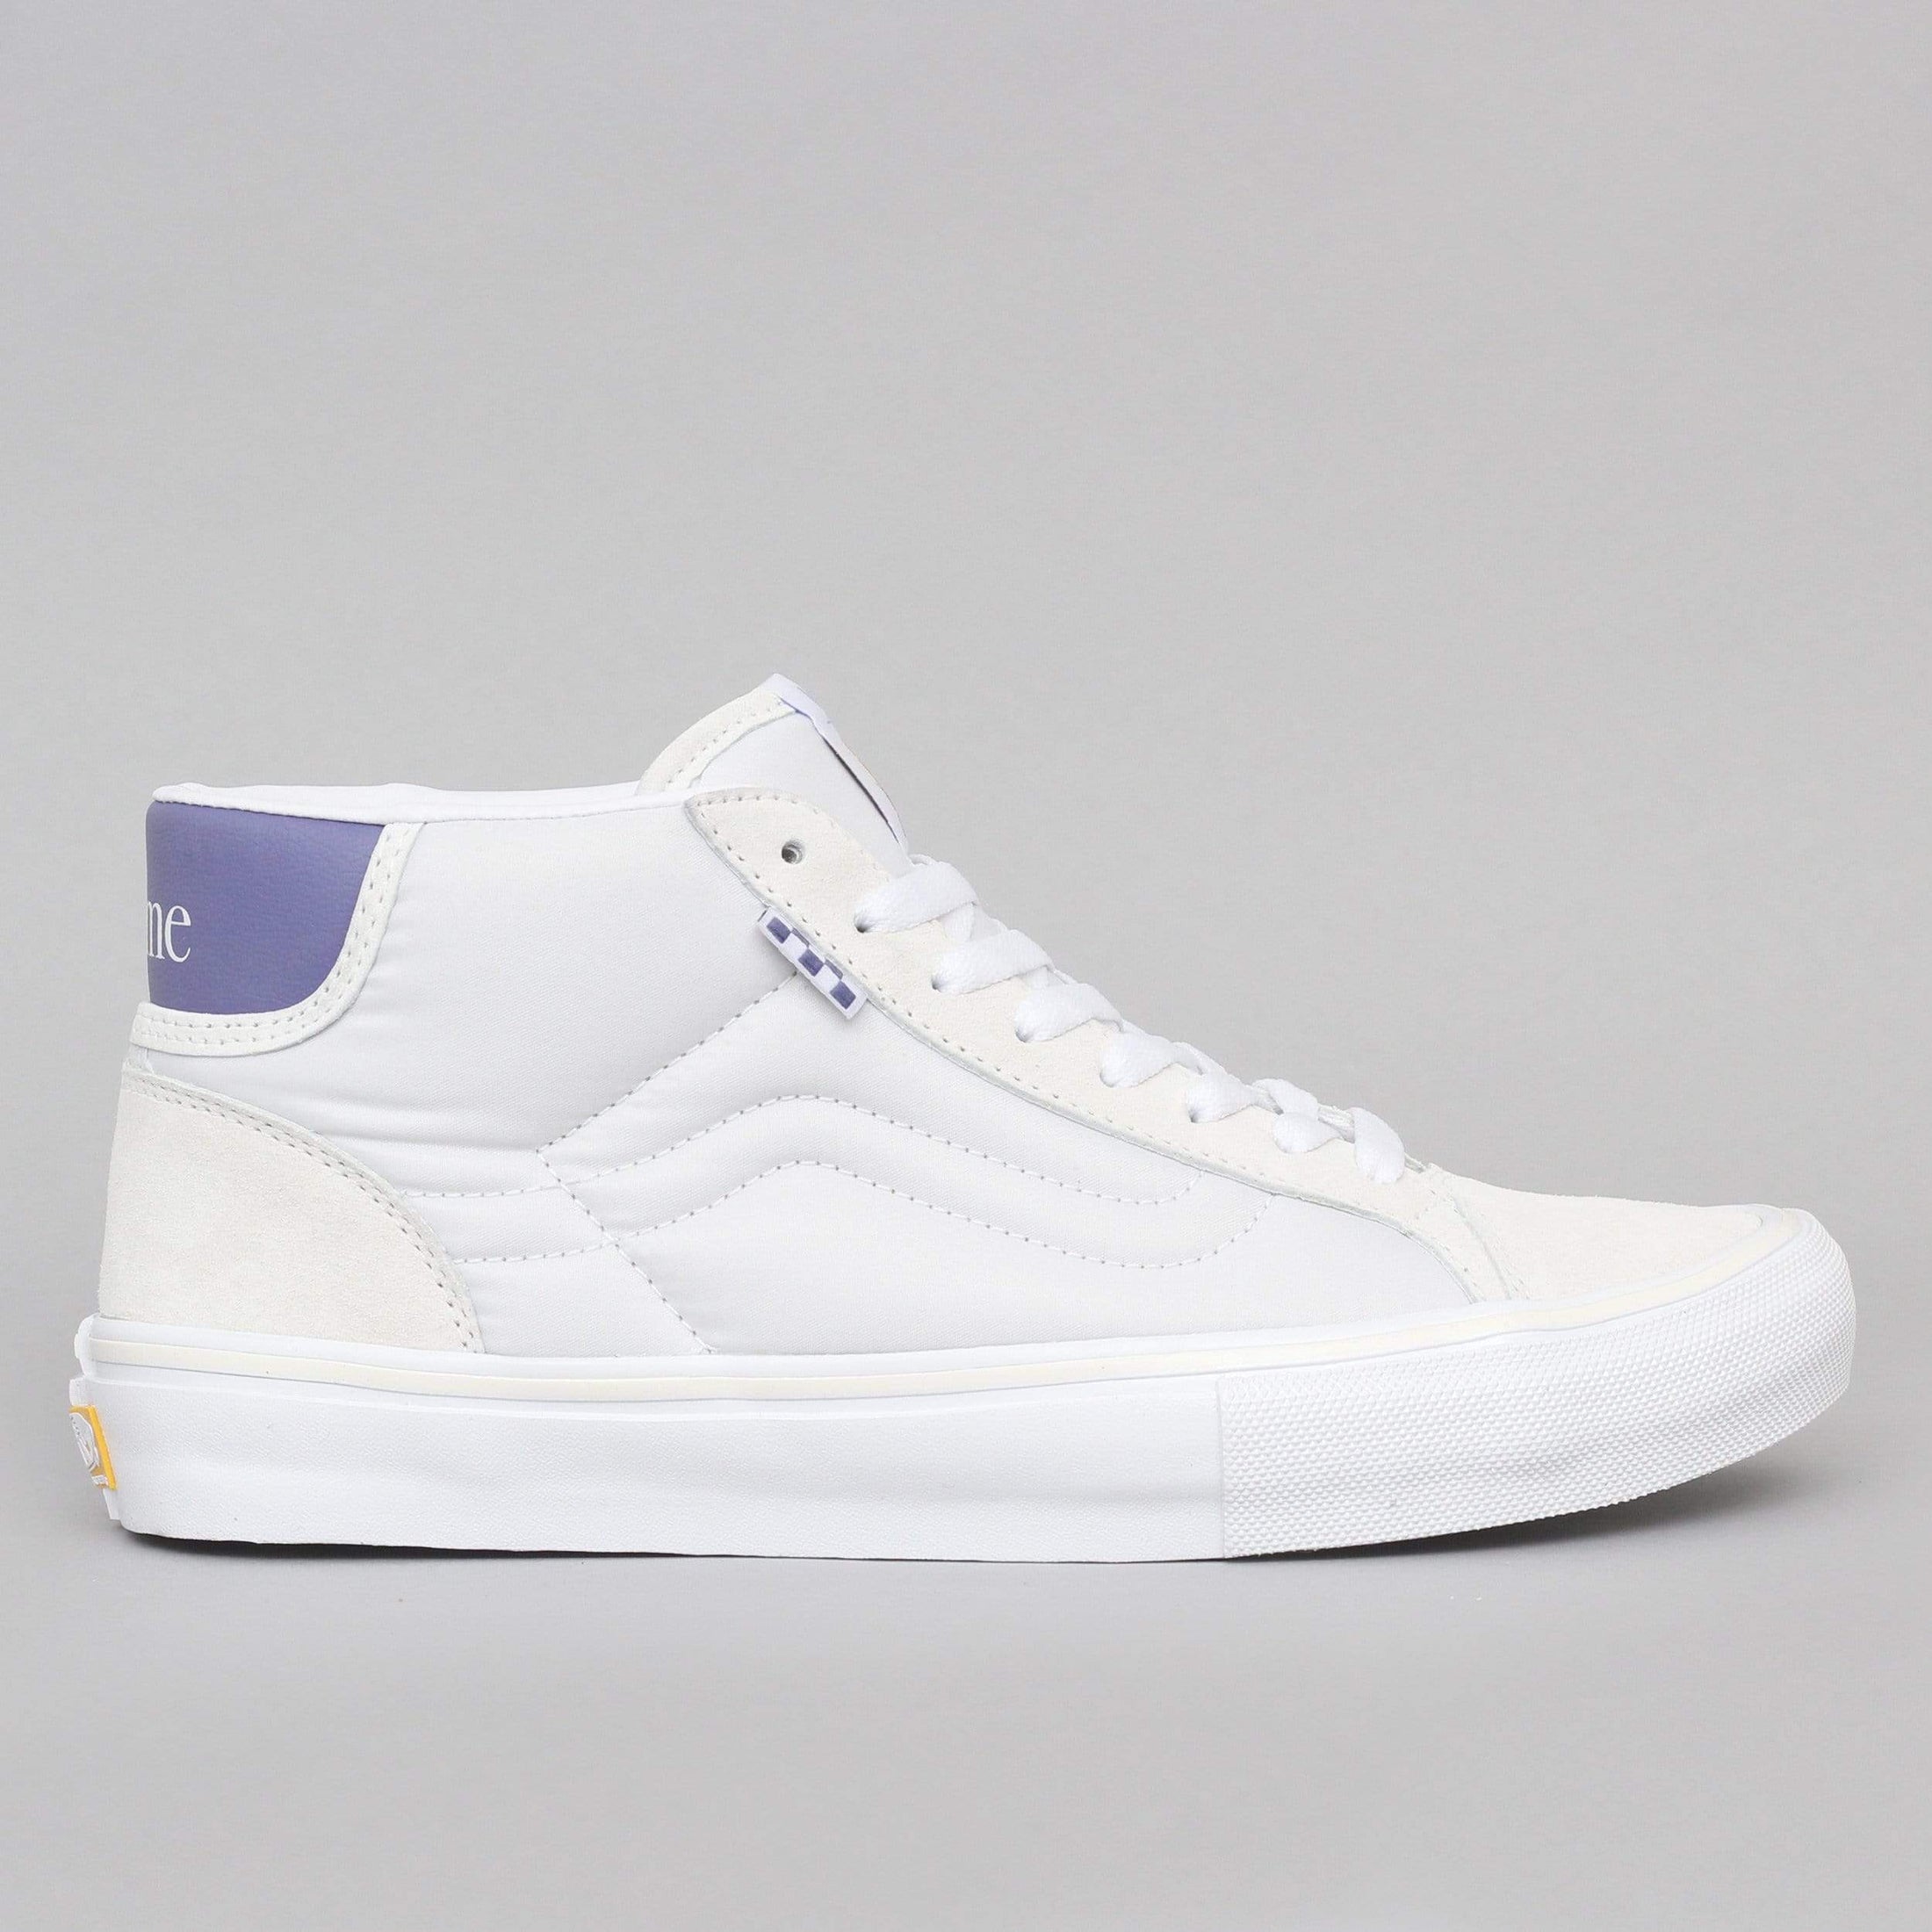 Vans Skate Mid Skool Ltd Shoes (Dime) Off White